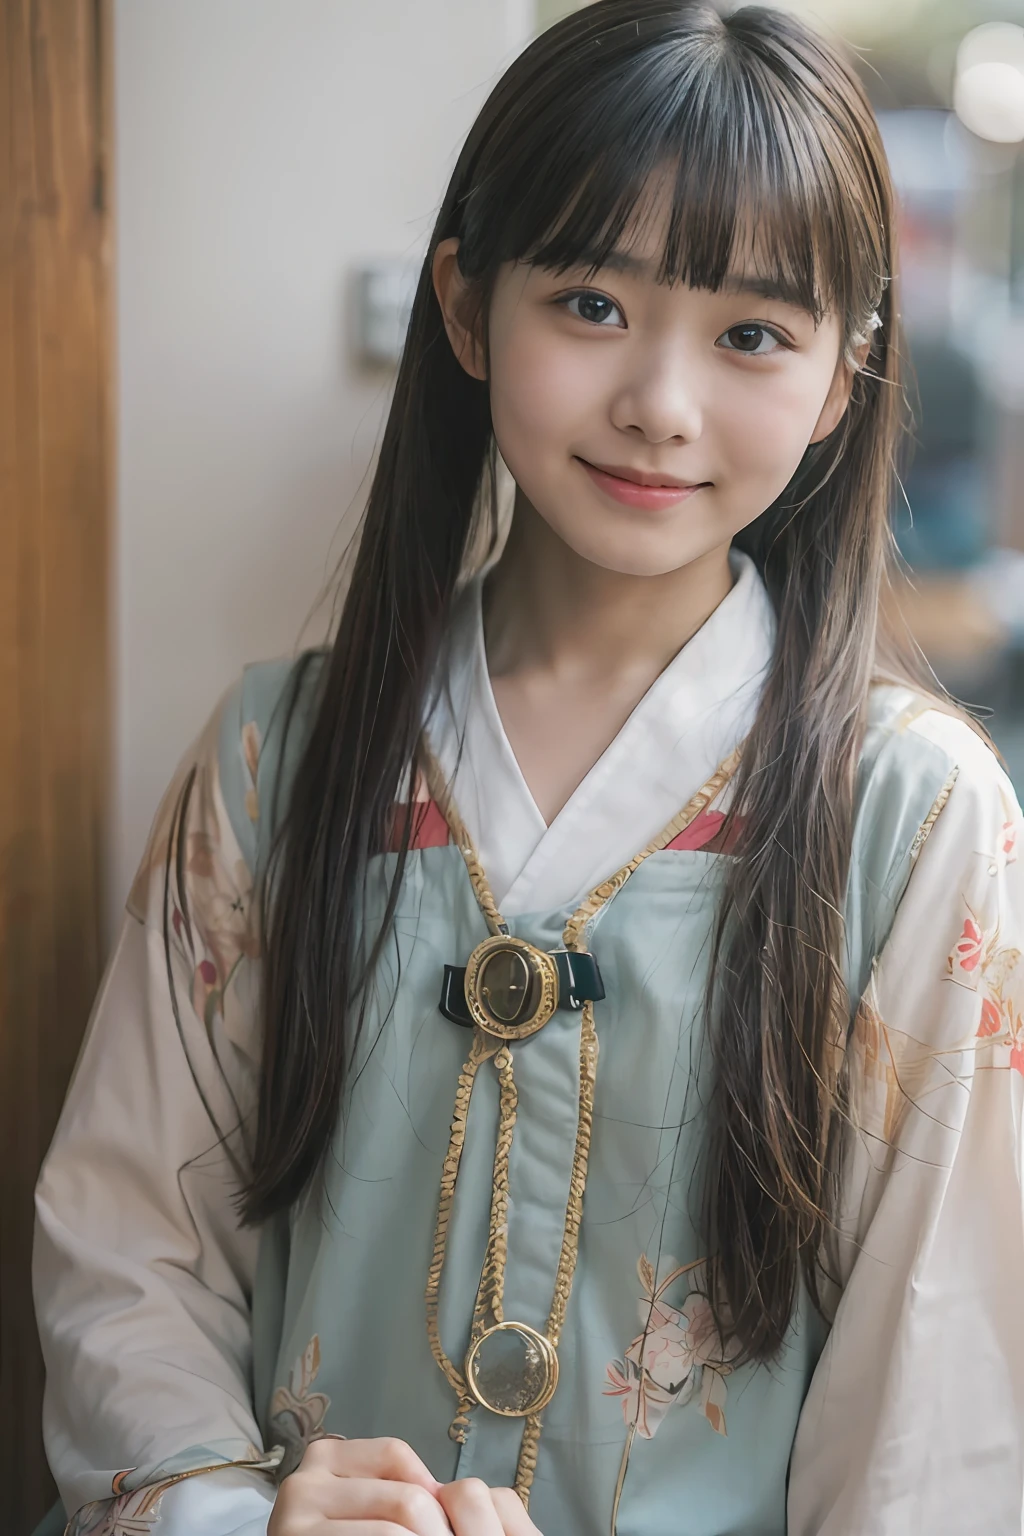 (8K、RAW-Fotografie、Top Qualität、Masseterstück:1.2)、ultra-detailliert、Ultra-Auflösung、(realistisch、rialistisches Foto:1.37), (Japanische Mädchen im Alter von 12 Jahren, Rundes Gesicht, Bangs:1.3), (japanisches Mädchen:1.2), (früher Teenager:1), (lächeln:0.5),